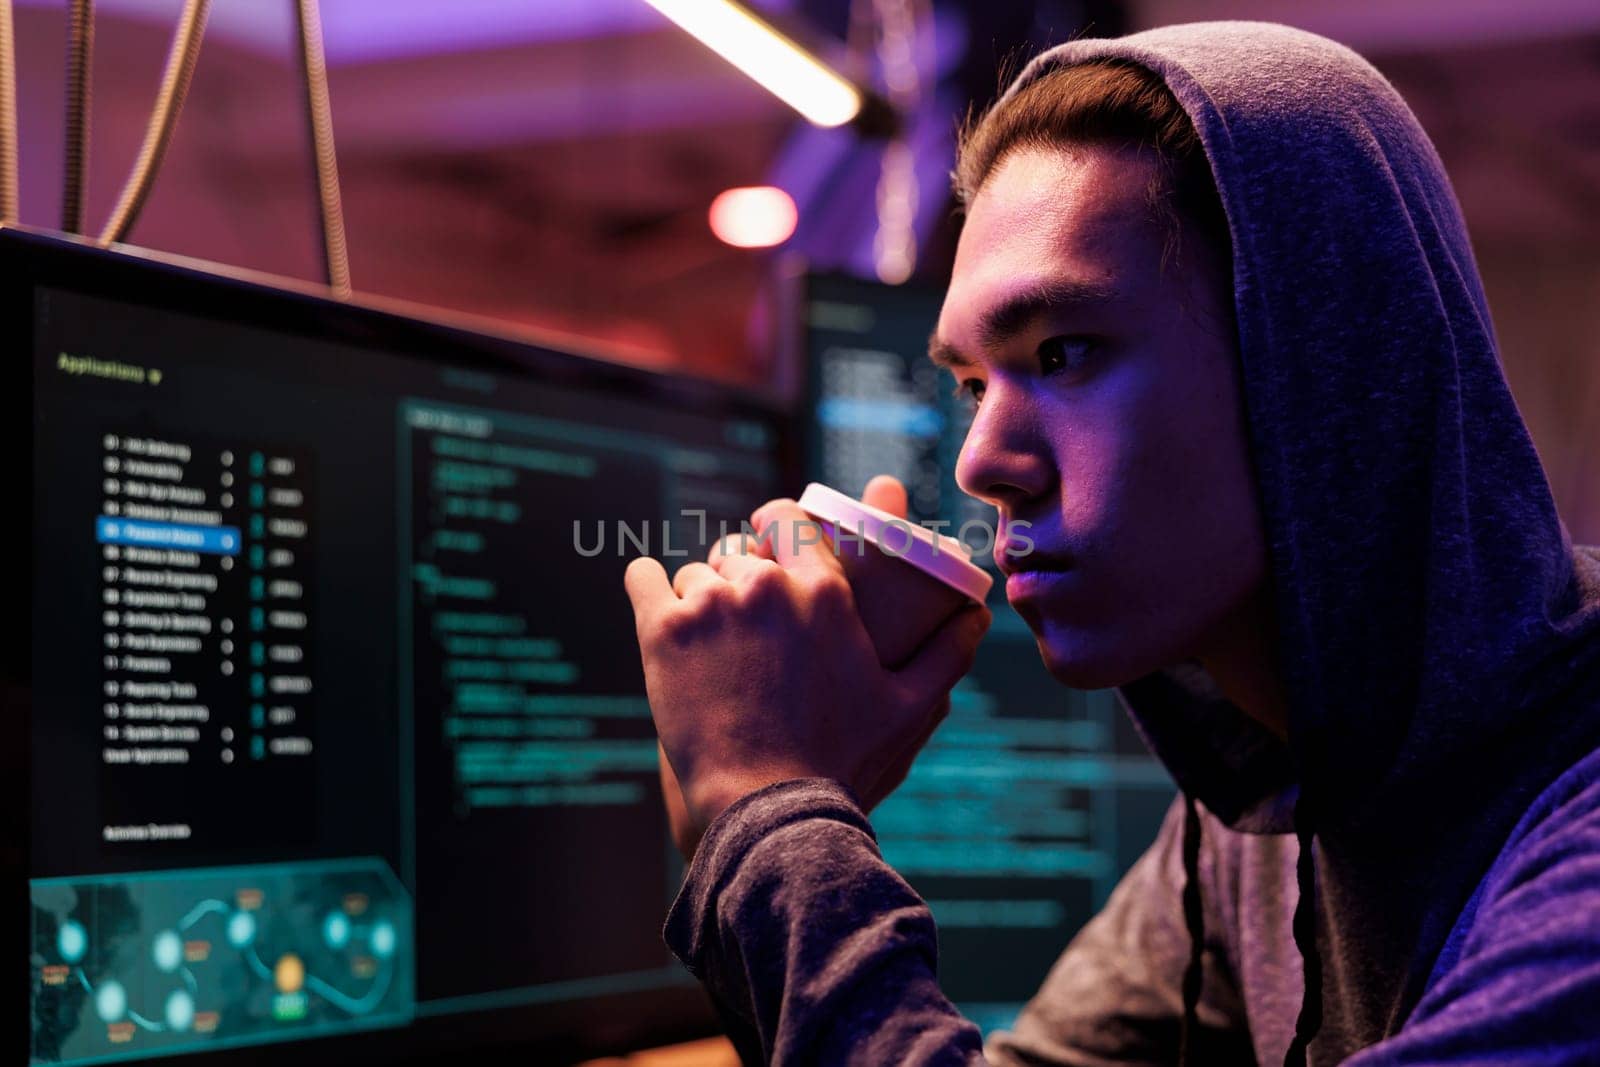 Asian hacker drinking coffee by DCStudio